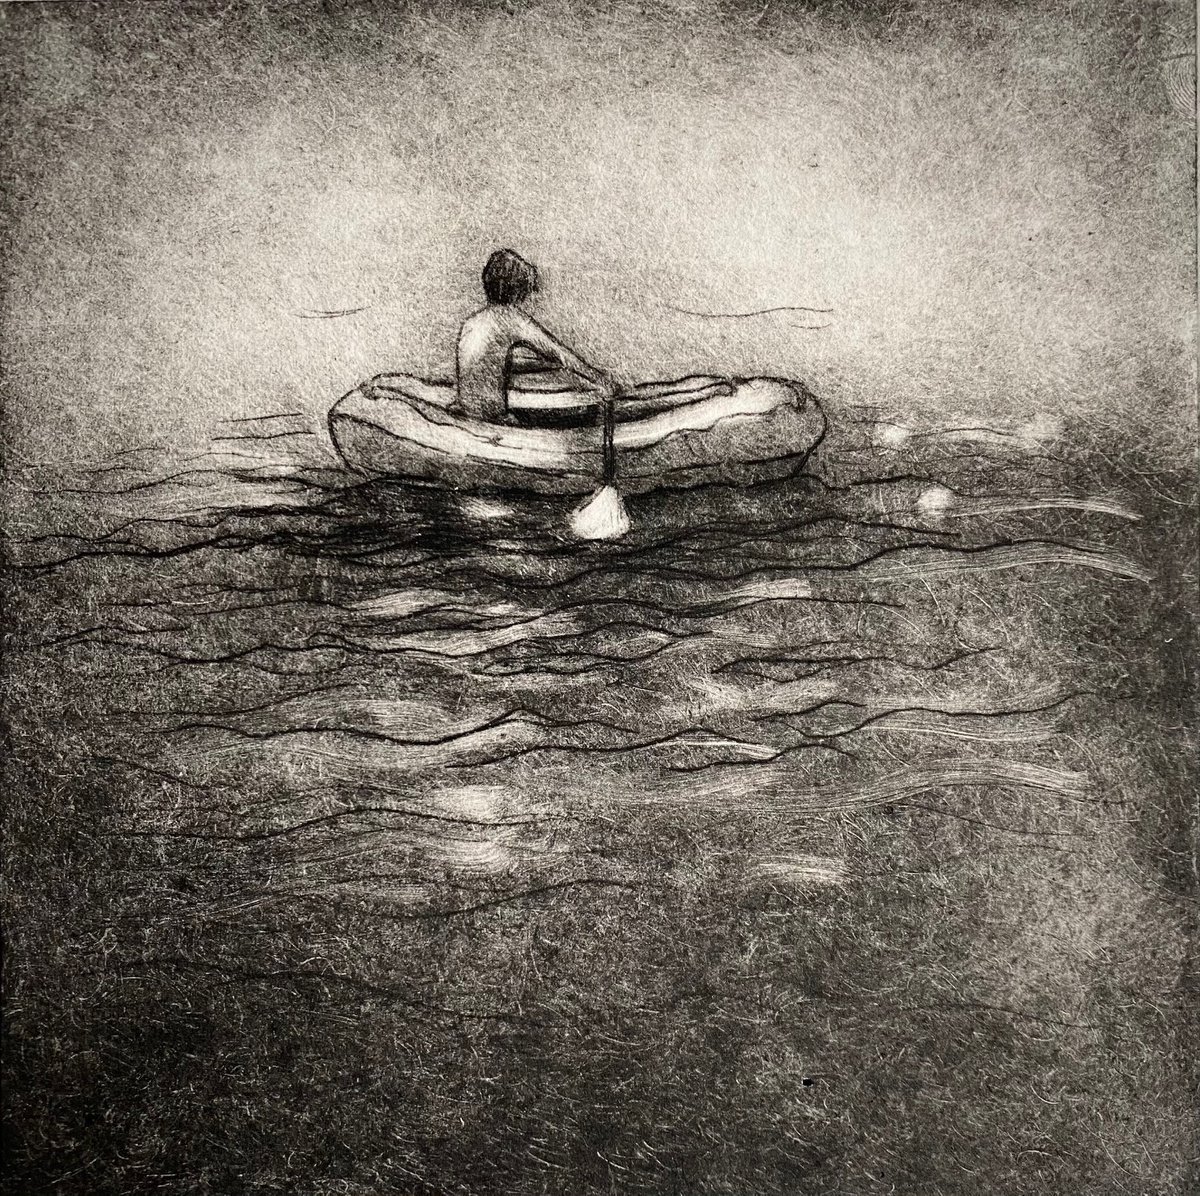 Boy in Boat by Rebecca Denton